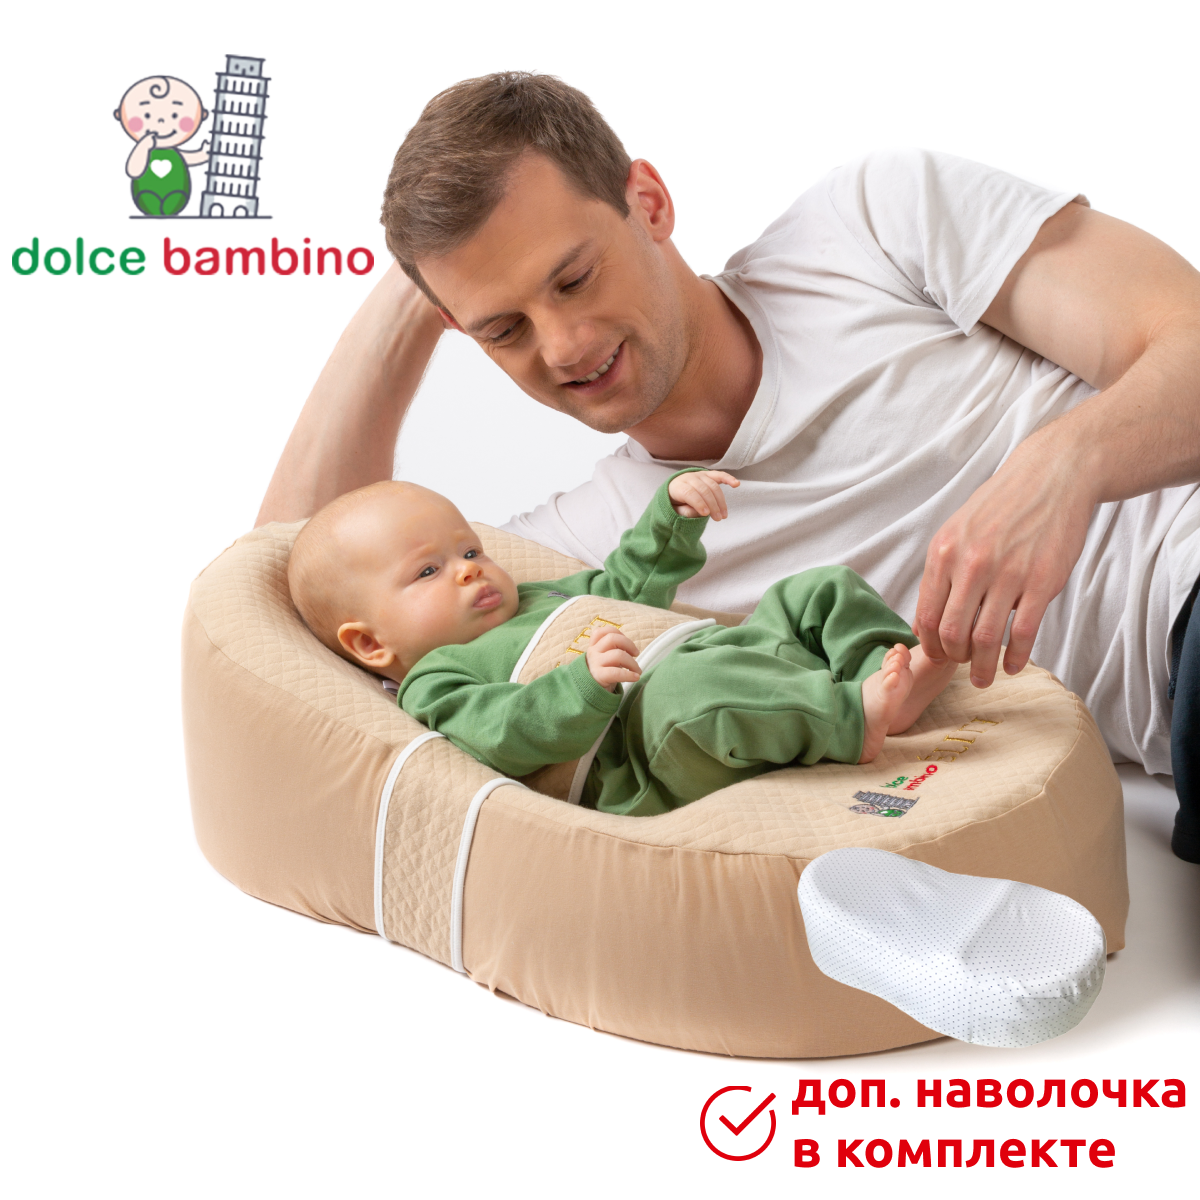 Комплект кокон для новорожденных dolce bambino ELITE с доп. наволочкой цвет Бежевый